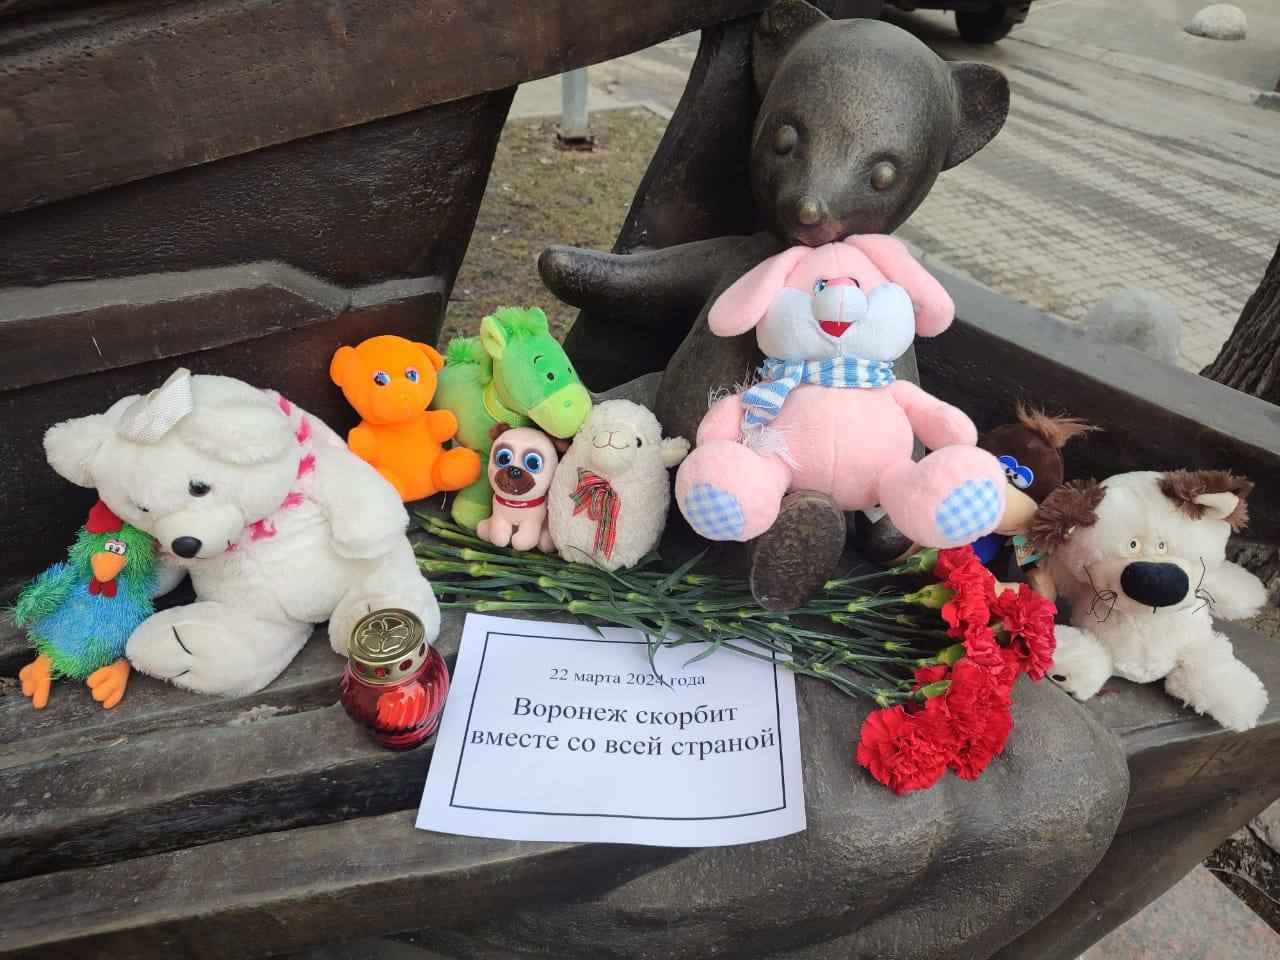 Мэр Воронежа сообщил о появлении народных мемориалов в память о погибших детях в теракте в Подмосковье